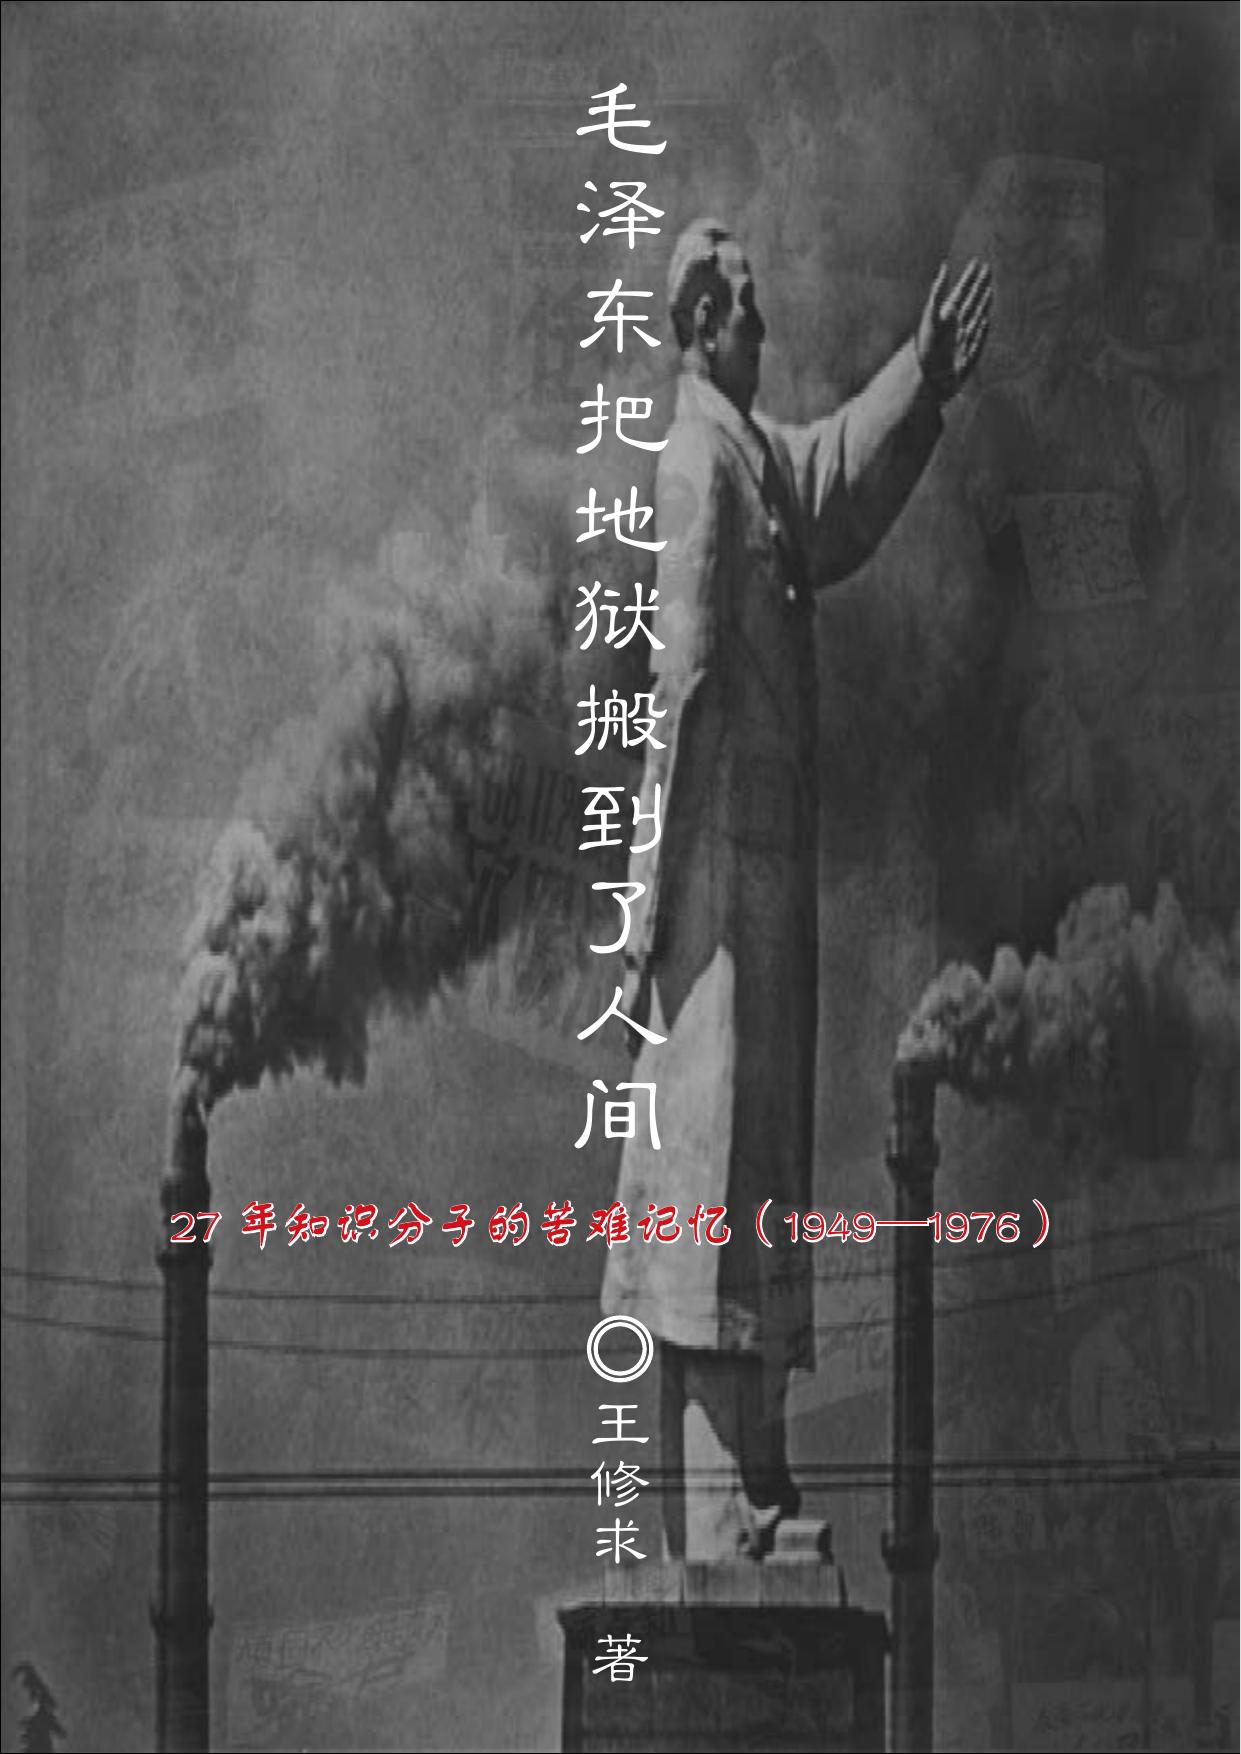 毛泽东把地狱搬到了人间—27年知识分子的苦难记忆（1949—1976） by 王修求 (z-li